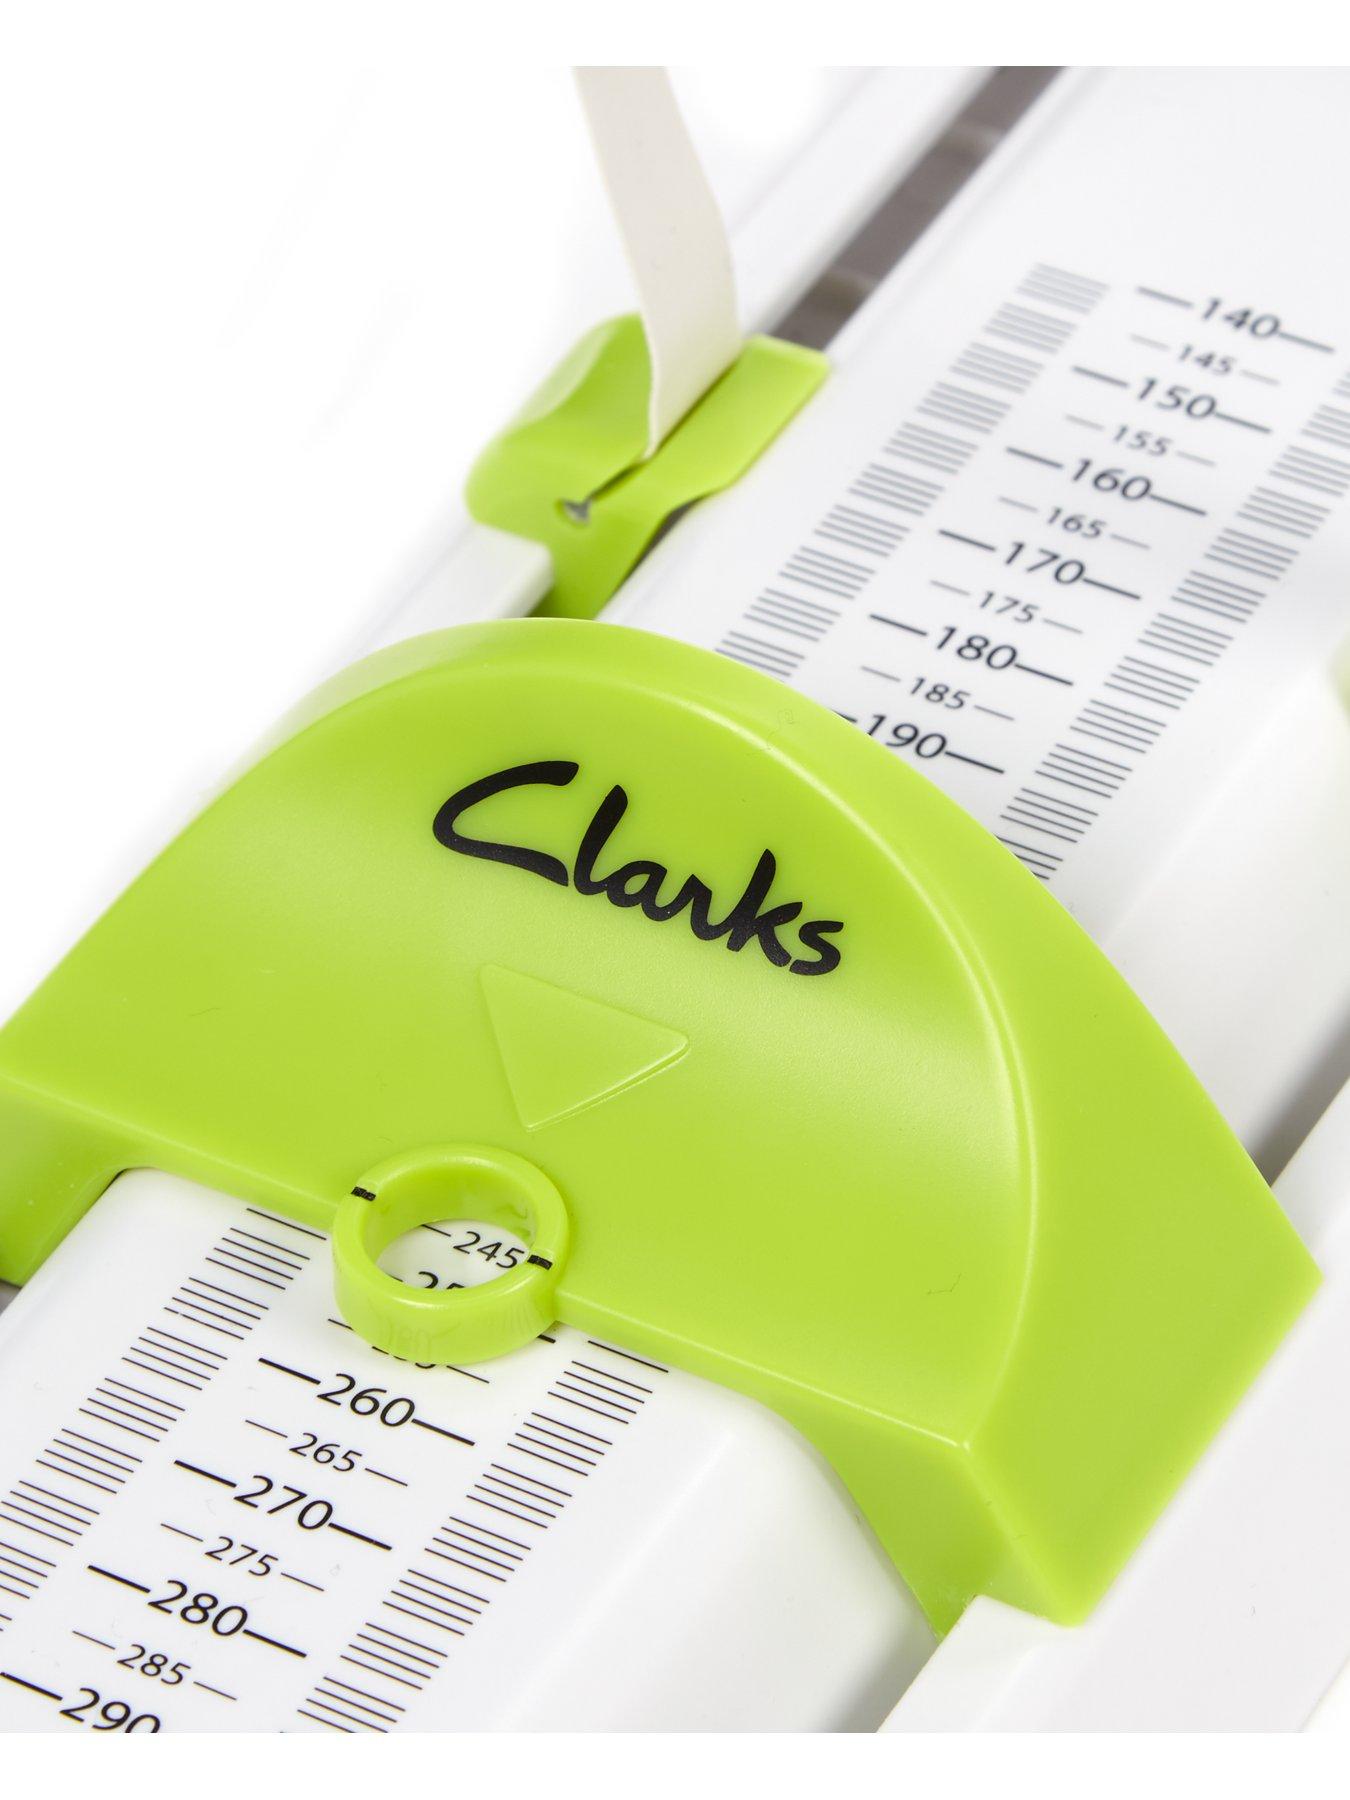 clarks junior calculator